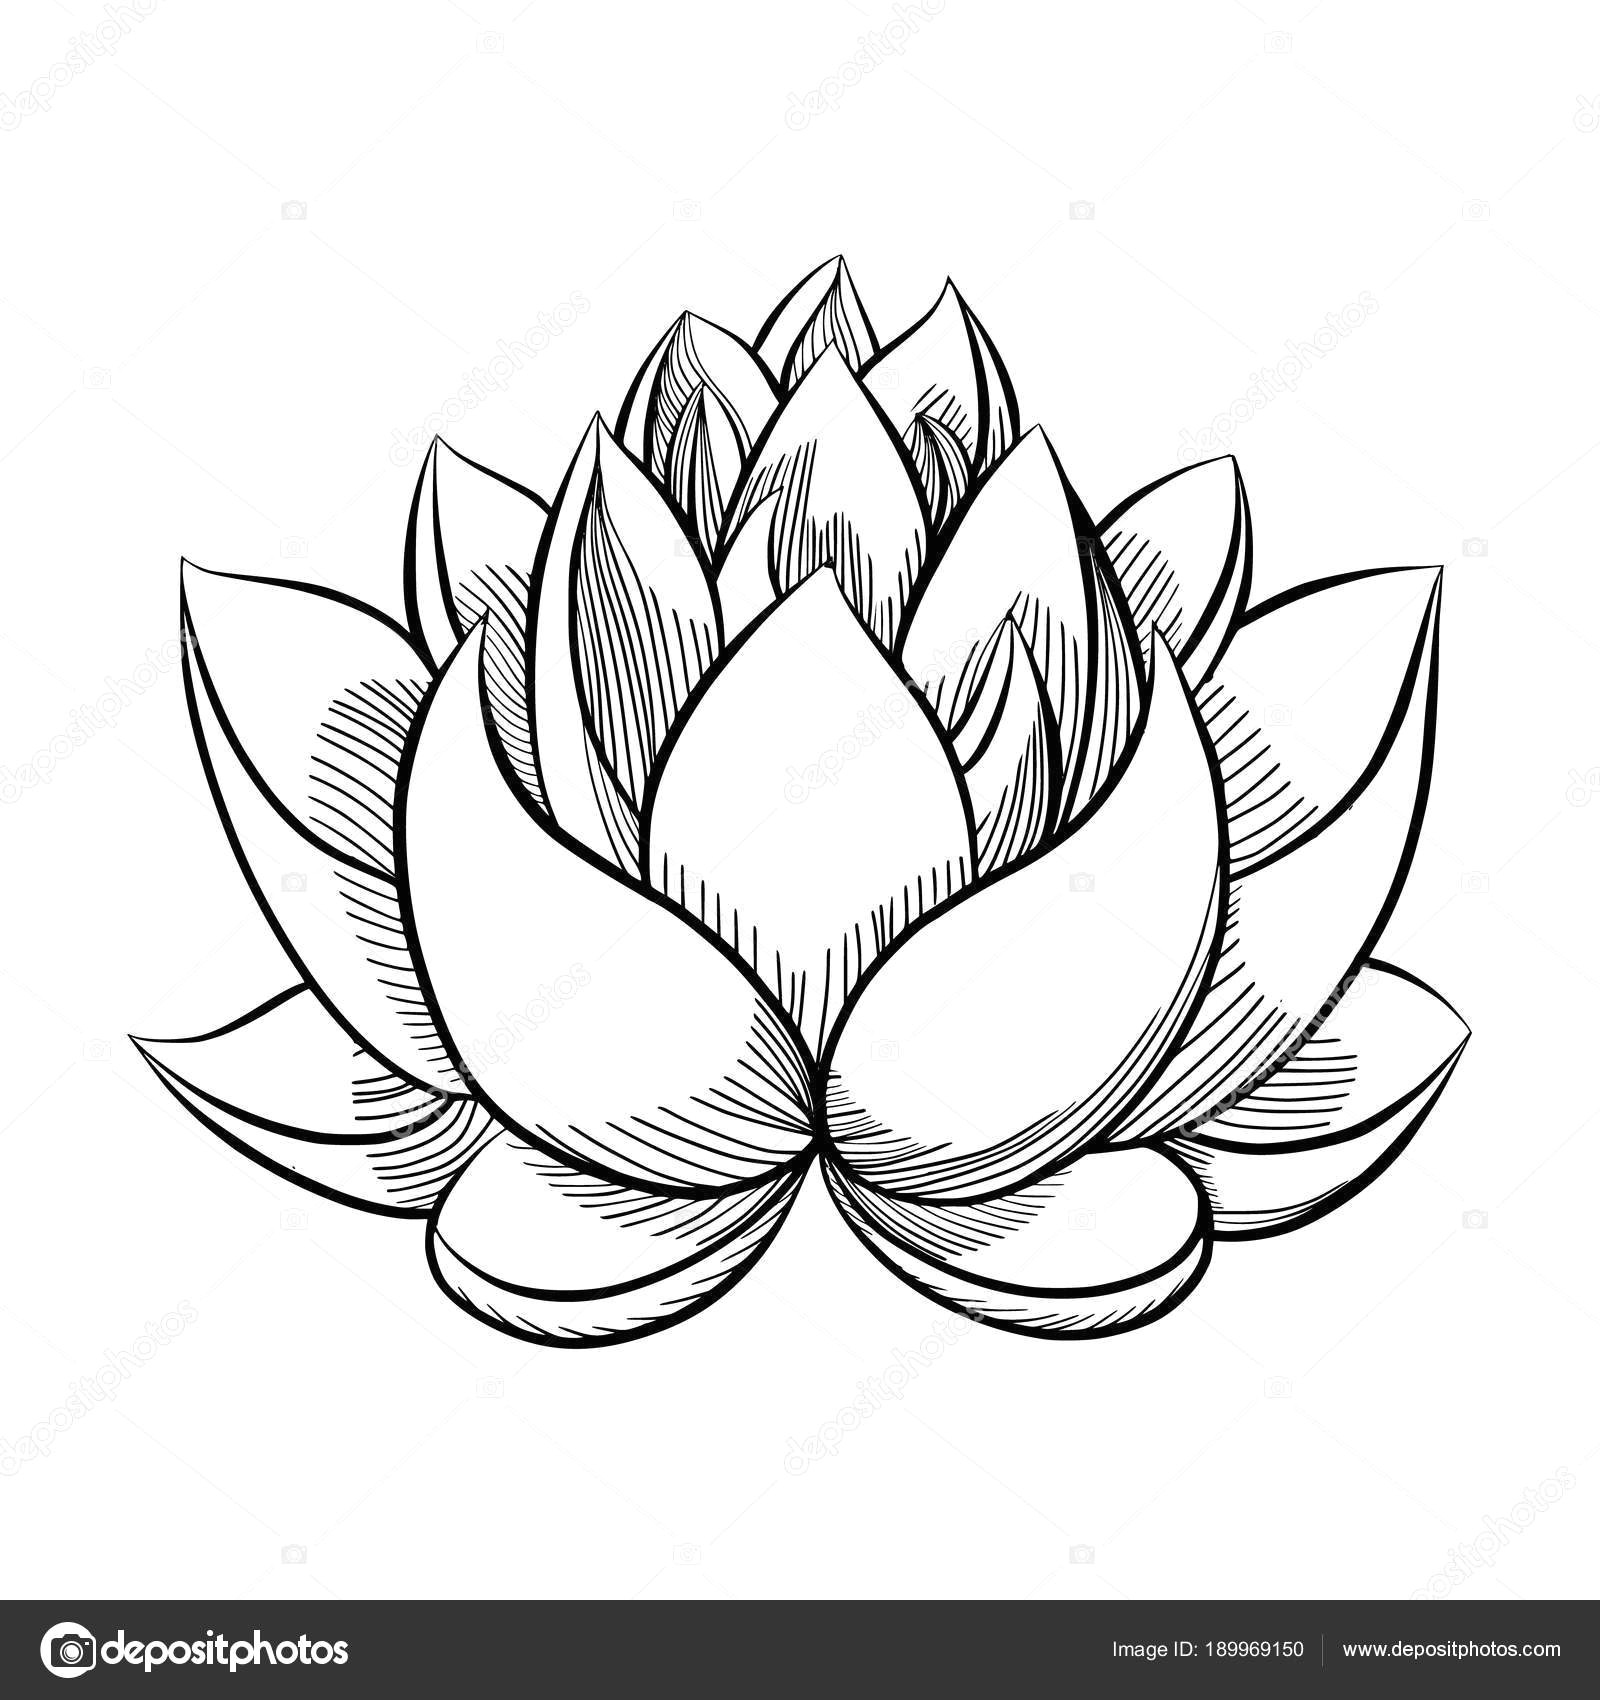 flower bloom stock vector gennadiikorchuganov bloomed buds a lotus drawing bud flower simple at getdrawings